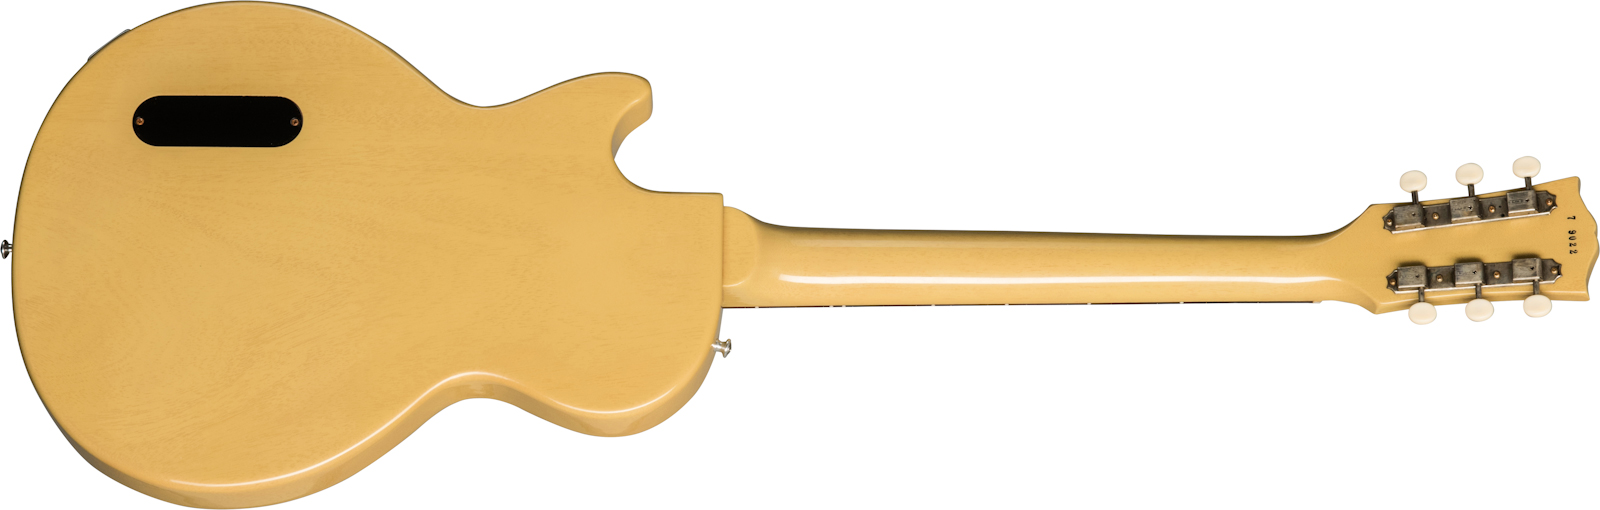 Gibson Custom Shop Les Paul Junior 1957 Single Cut Reissue P90 Ht Rw - Vos Tv Yellow - Guitare Électrique Single Cut - Variation 1